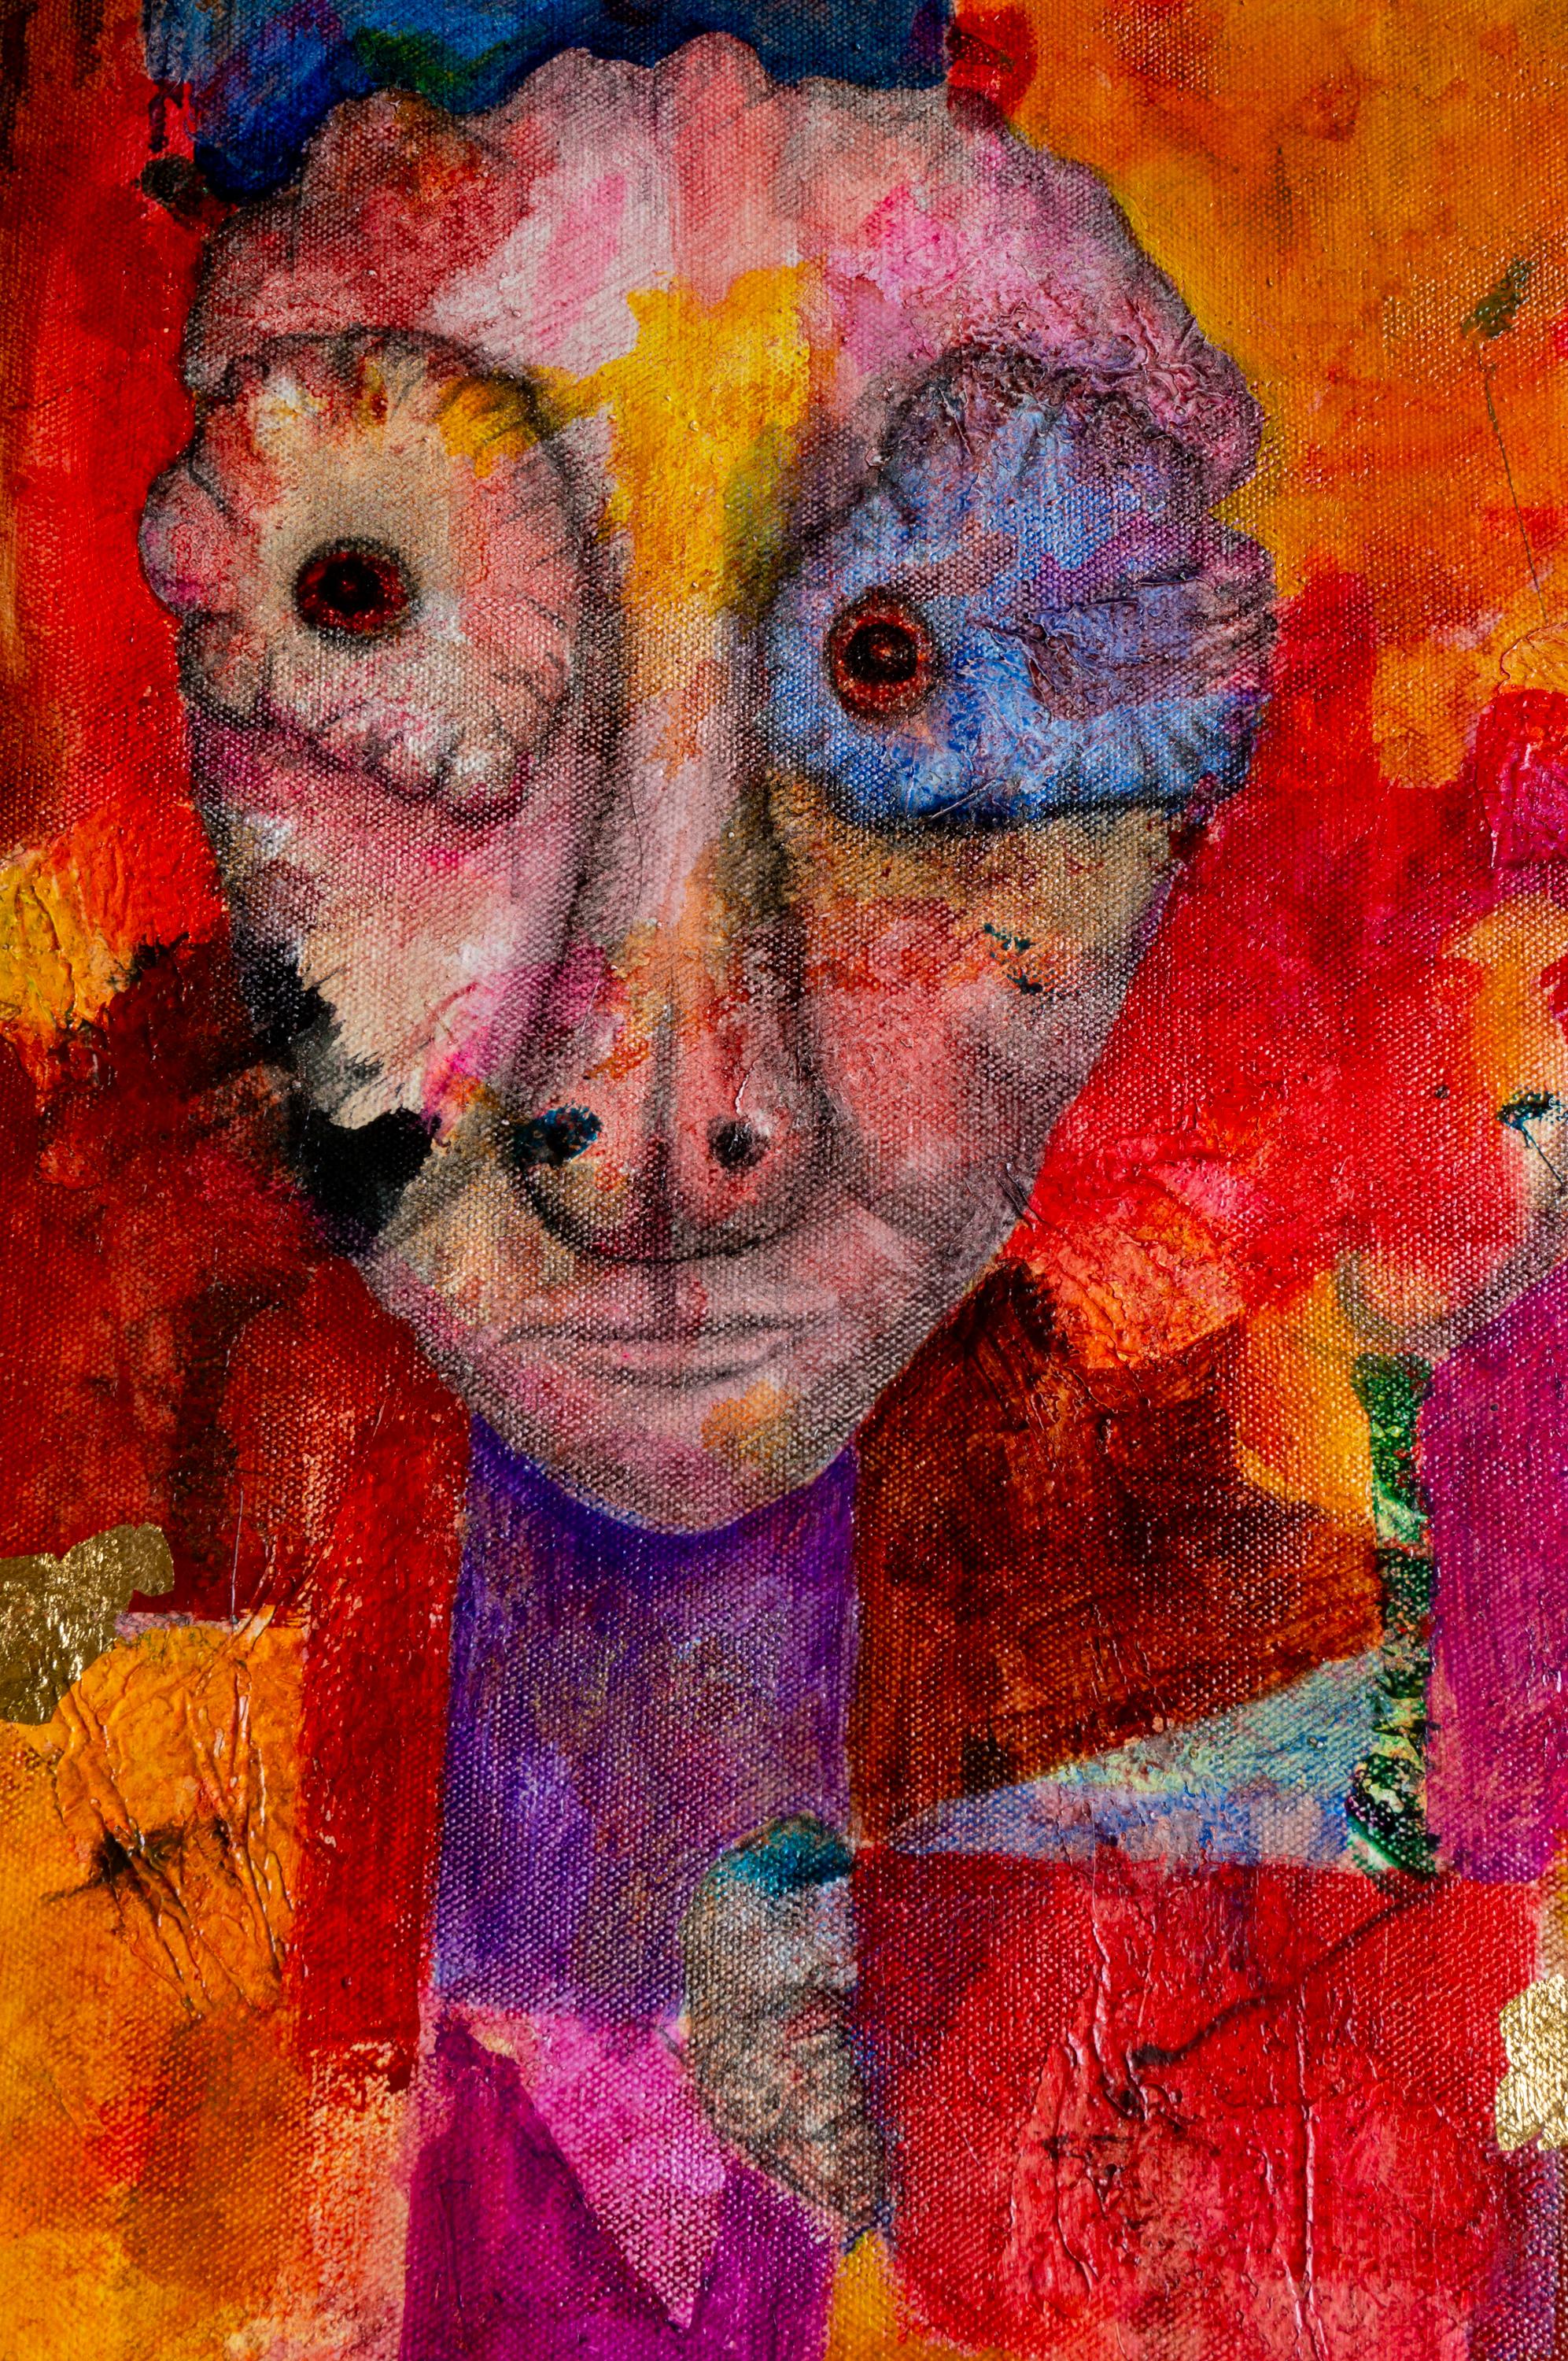 In diesem Gemälde wird der Betrachter eingeladen, ein Mosaik aus Farben und rätselhaften Figuren zu erkunden. Das mit Mischtechniken und hochwertigen Farben ausgeführte Kunstwerk zeigt ein visuelles Ensemble aus Rot-, Orange-, Violett- und